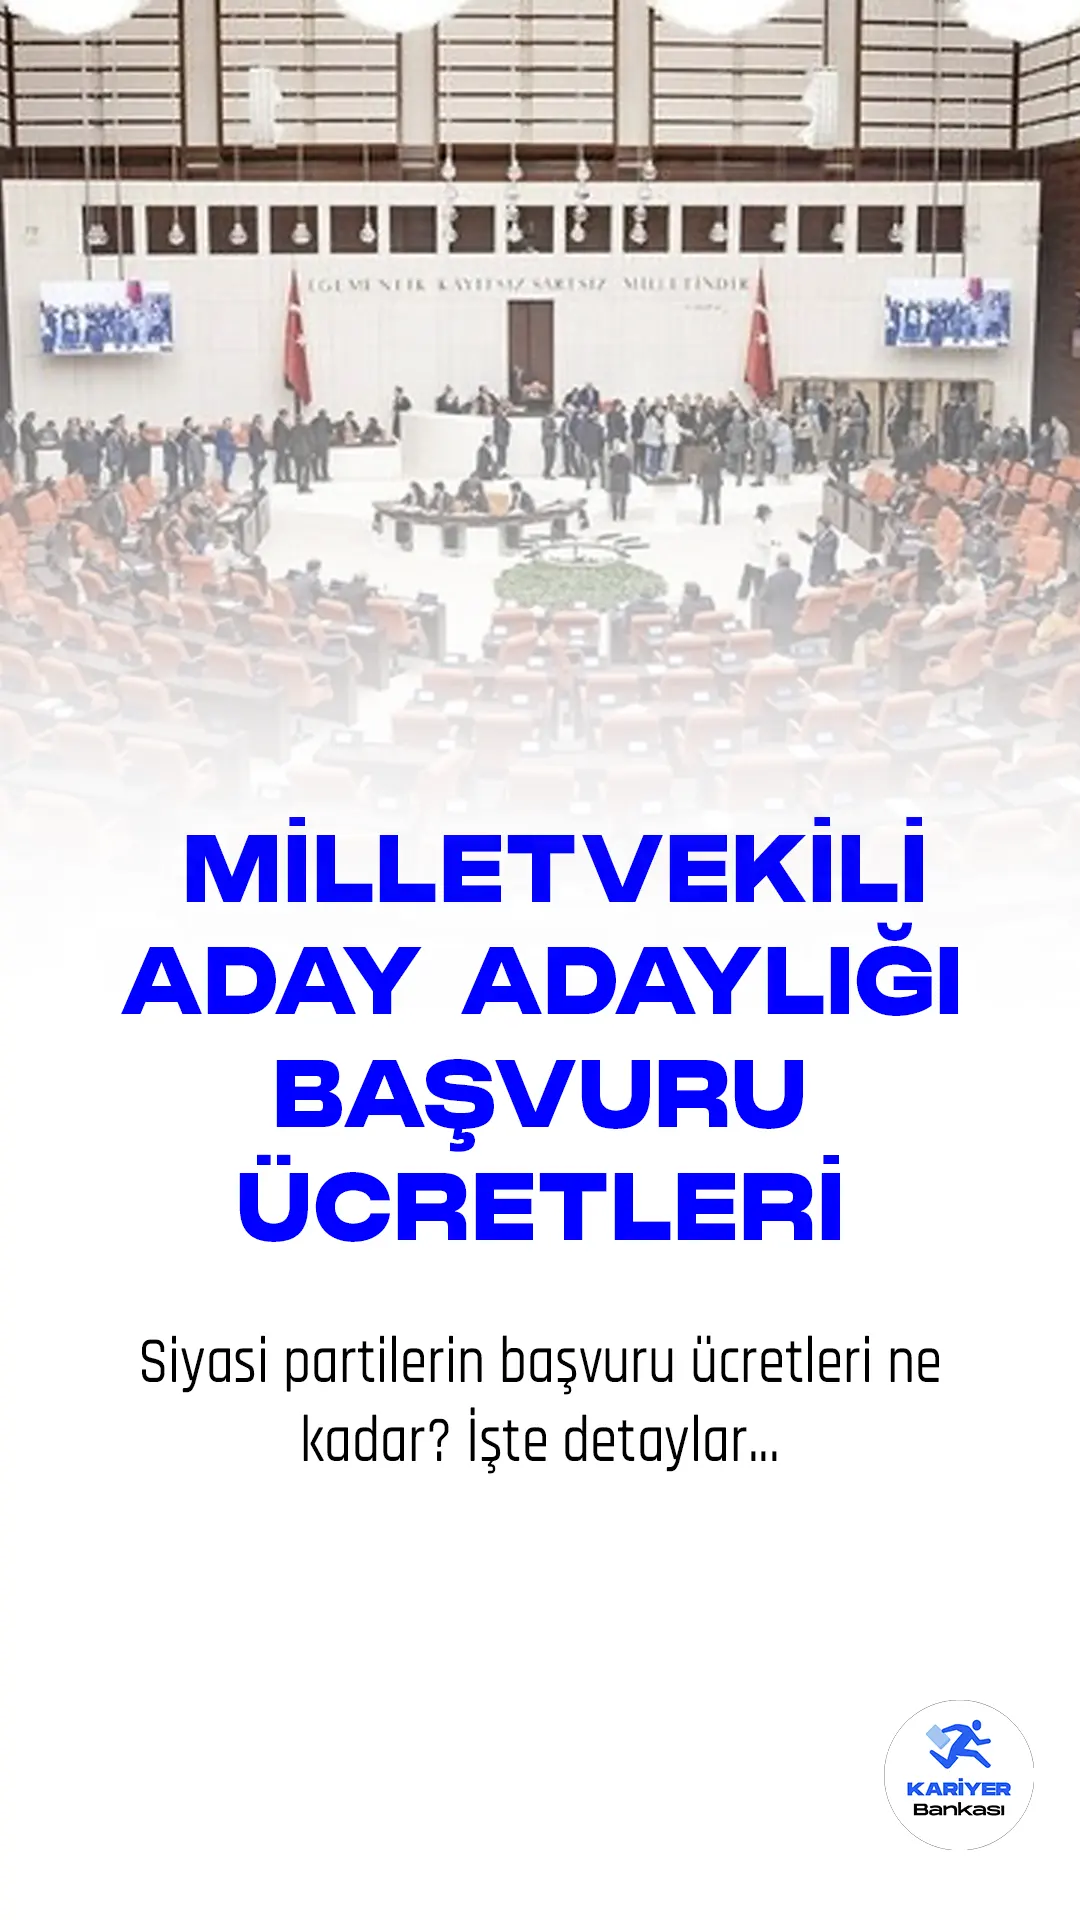 14 Mayıs 2023 tarihinde Türkiye'de Cumhurbaşkanlığı ve milletvekili seçimleri yapılacak. Siyasi partiler milletvekili aday adayı olmak isteyenler için başvuru koşullarını belirledi.